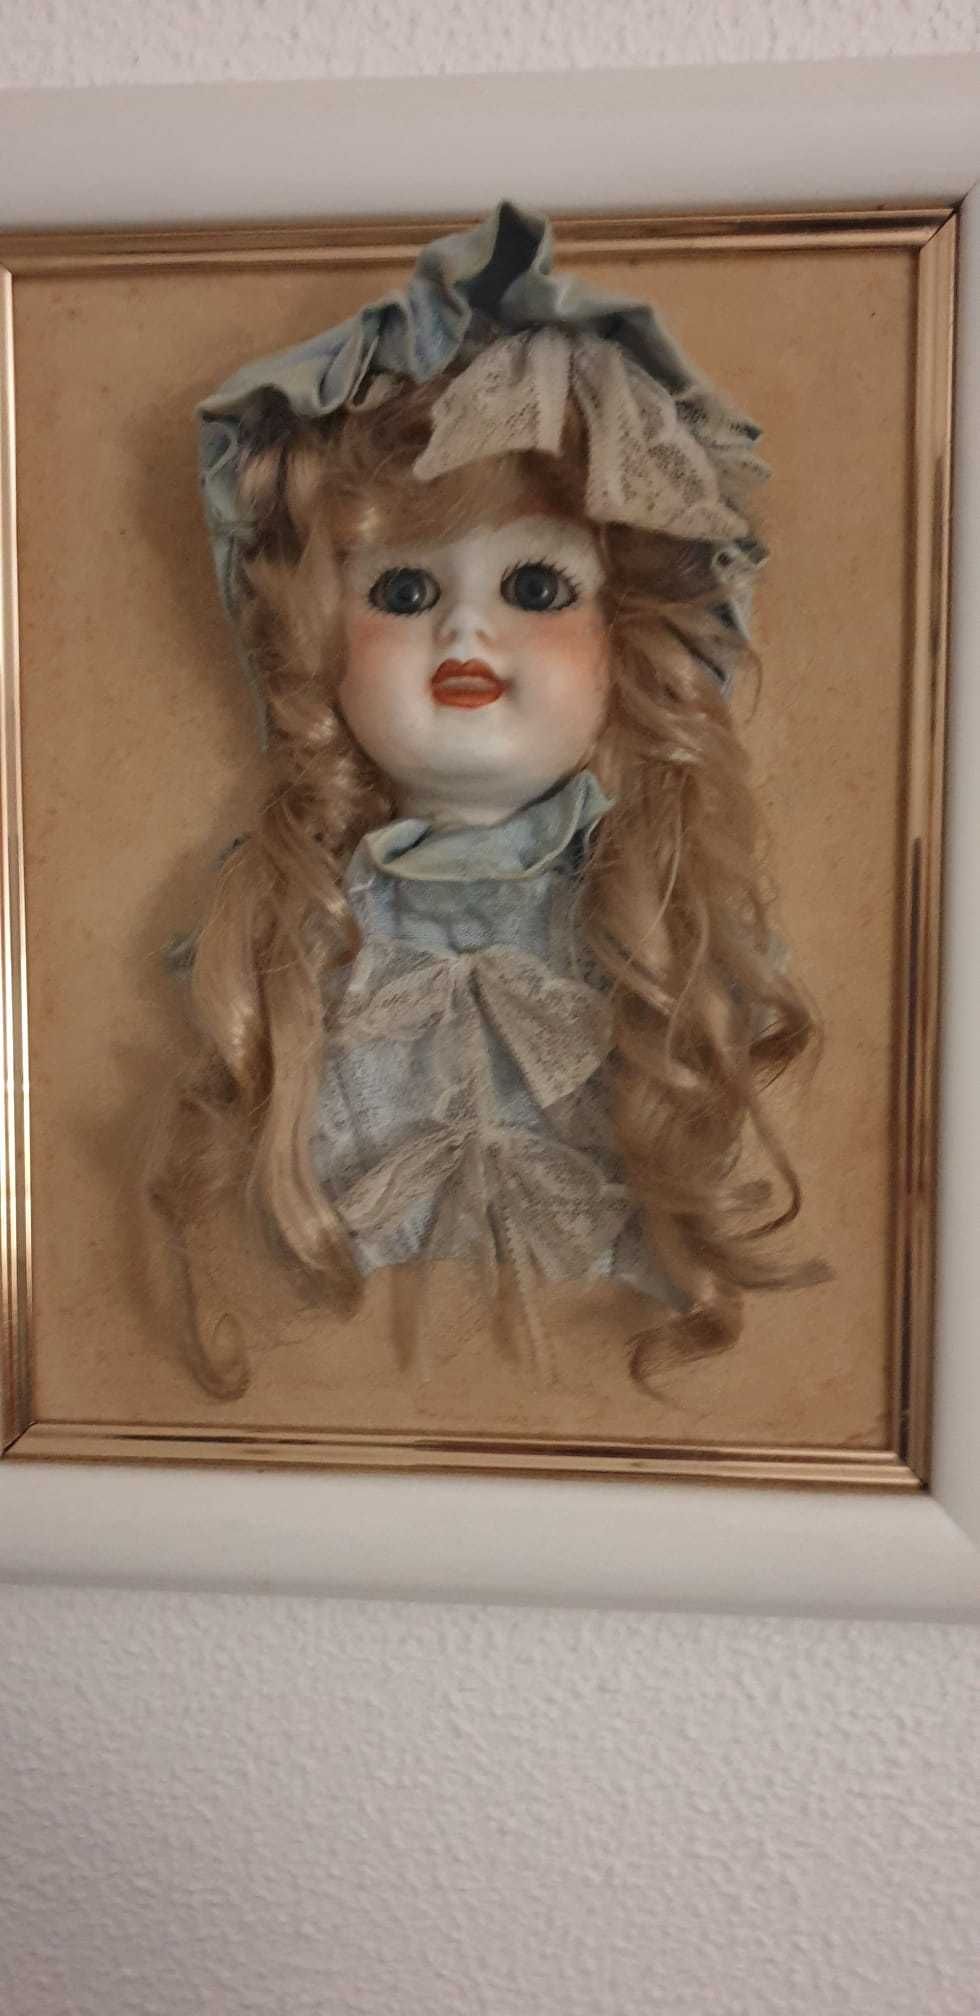 Quadro com boneca Alda (original)